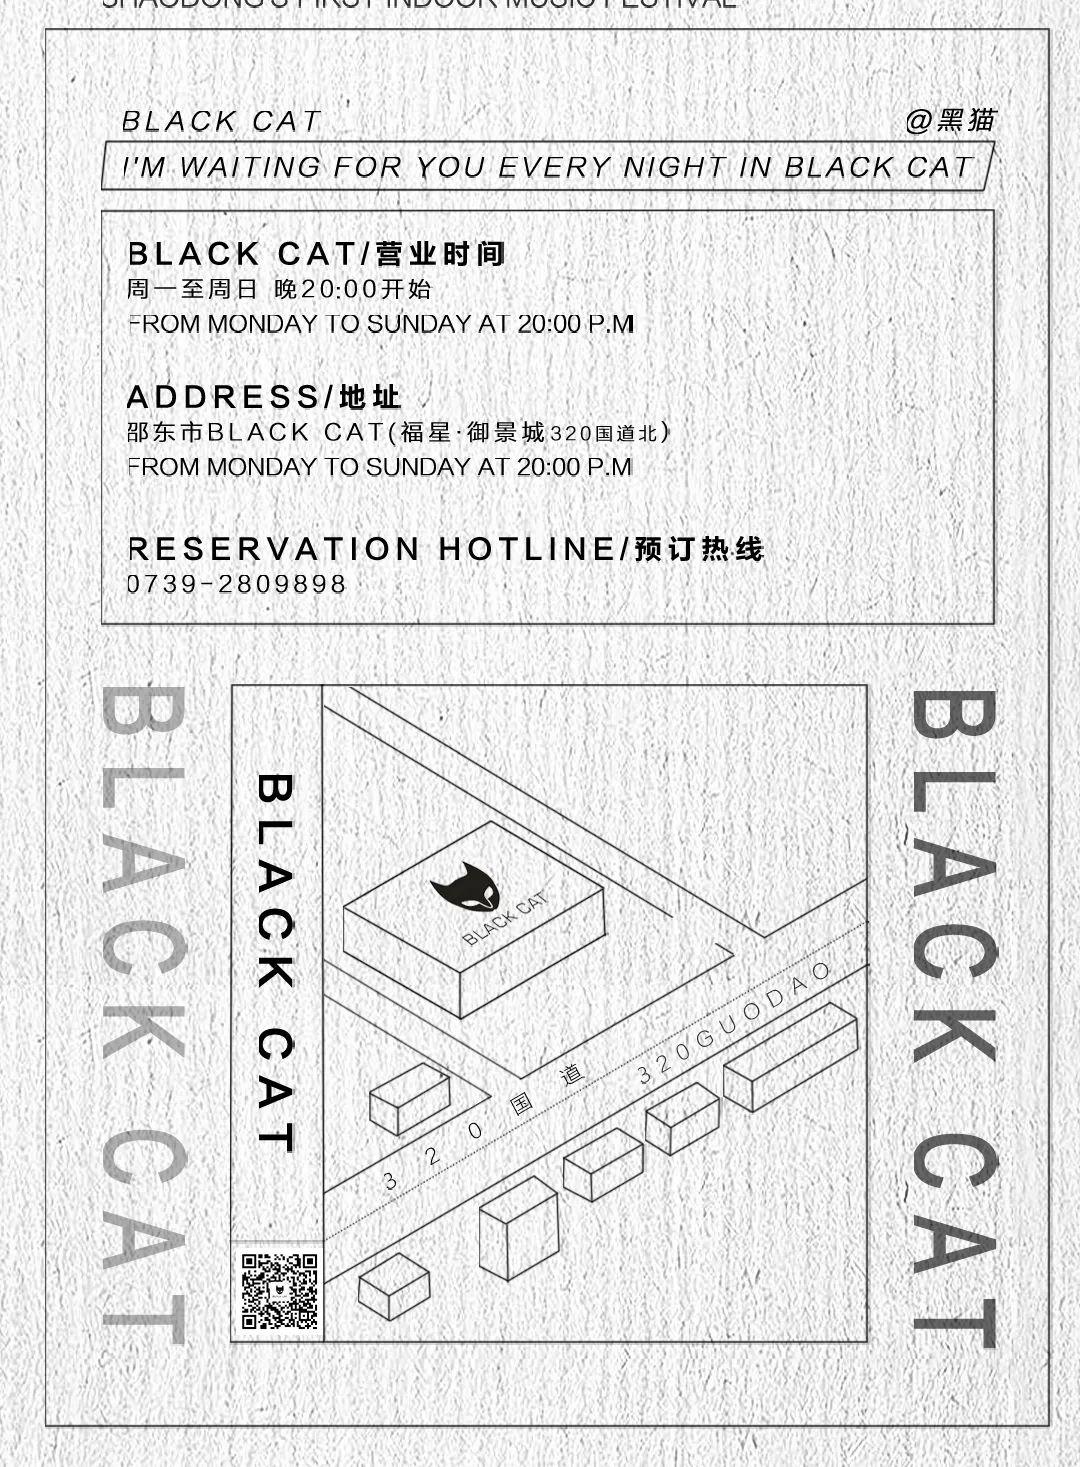 梦迪集团BLACK CAT邵东店丨10月25日#BLACK CAT联盟计划#-邵东邵东黑猫酒吧/BLACK CAT